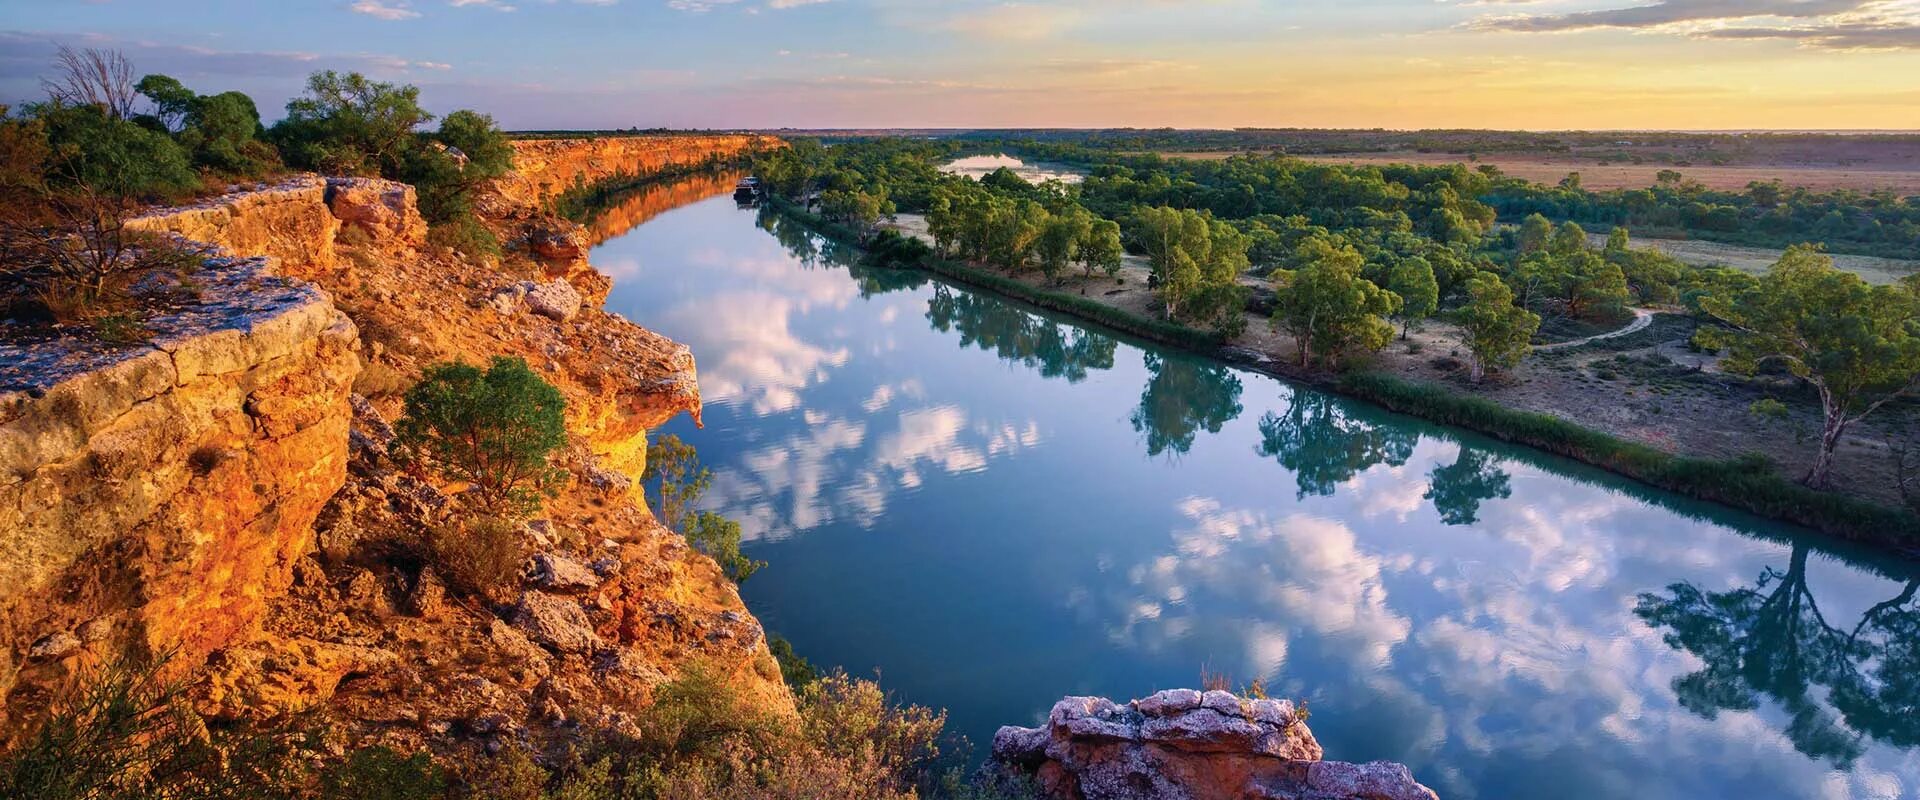 Австралия направление рек. Реки Дарлинг и Муррей. Река Муррей. Муррей в Австралии. Река Муррей (Марри).